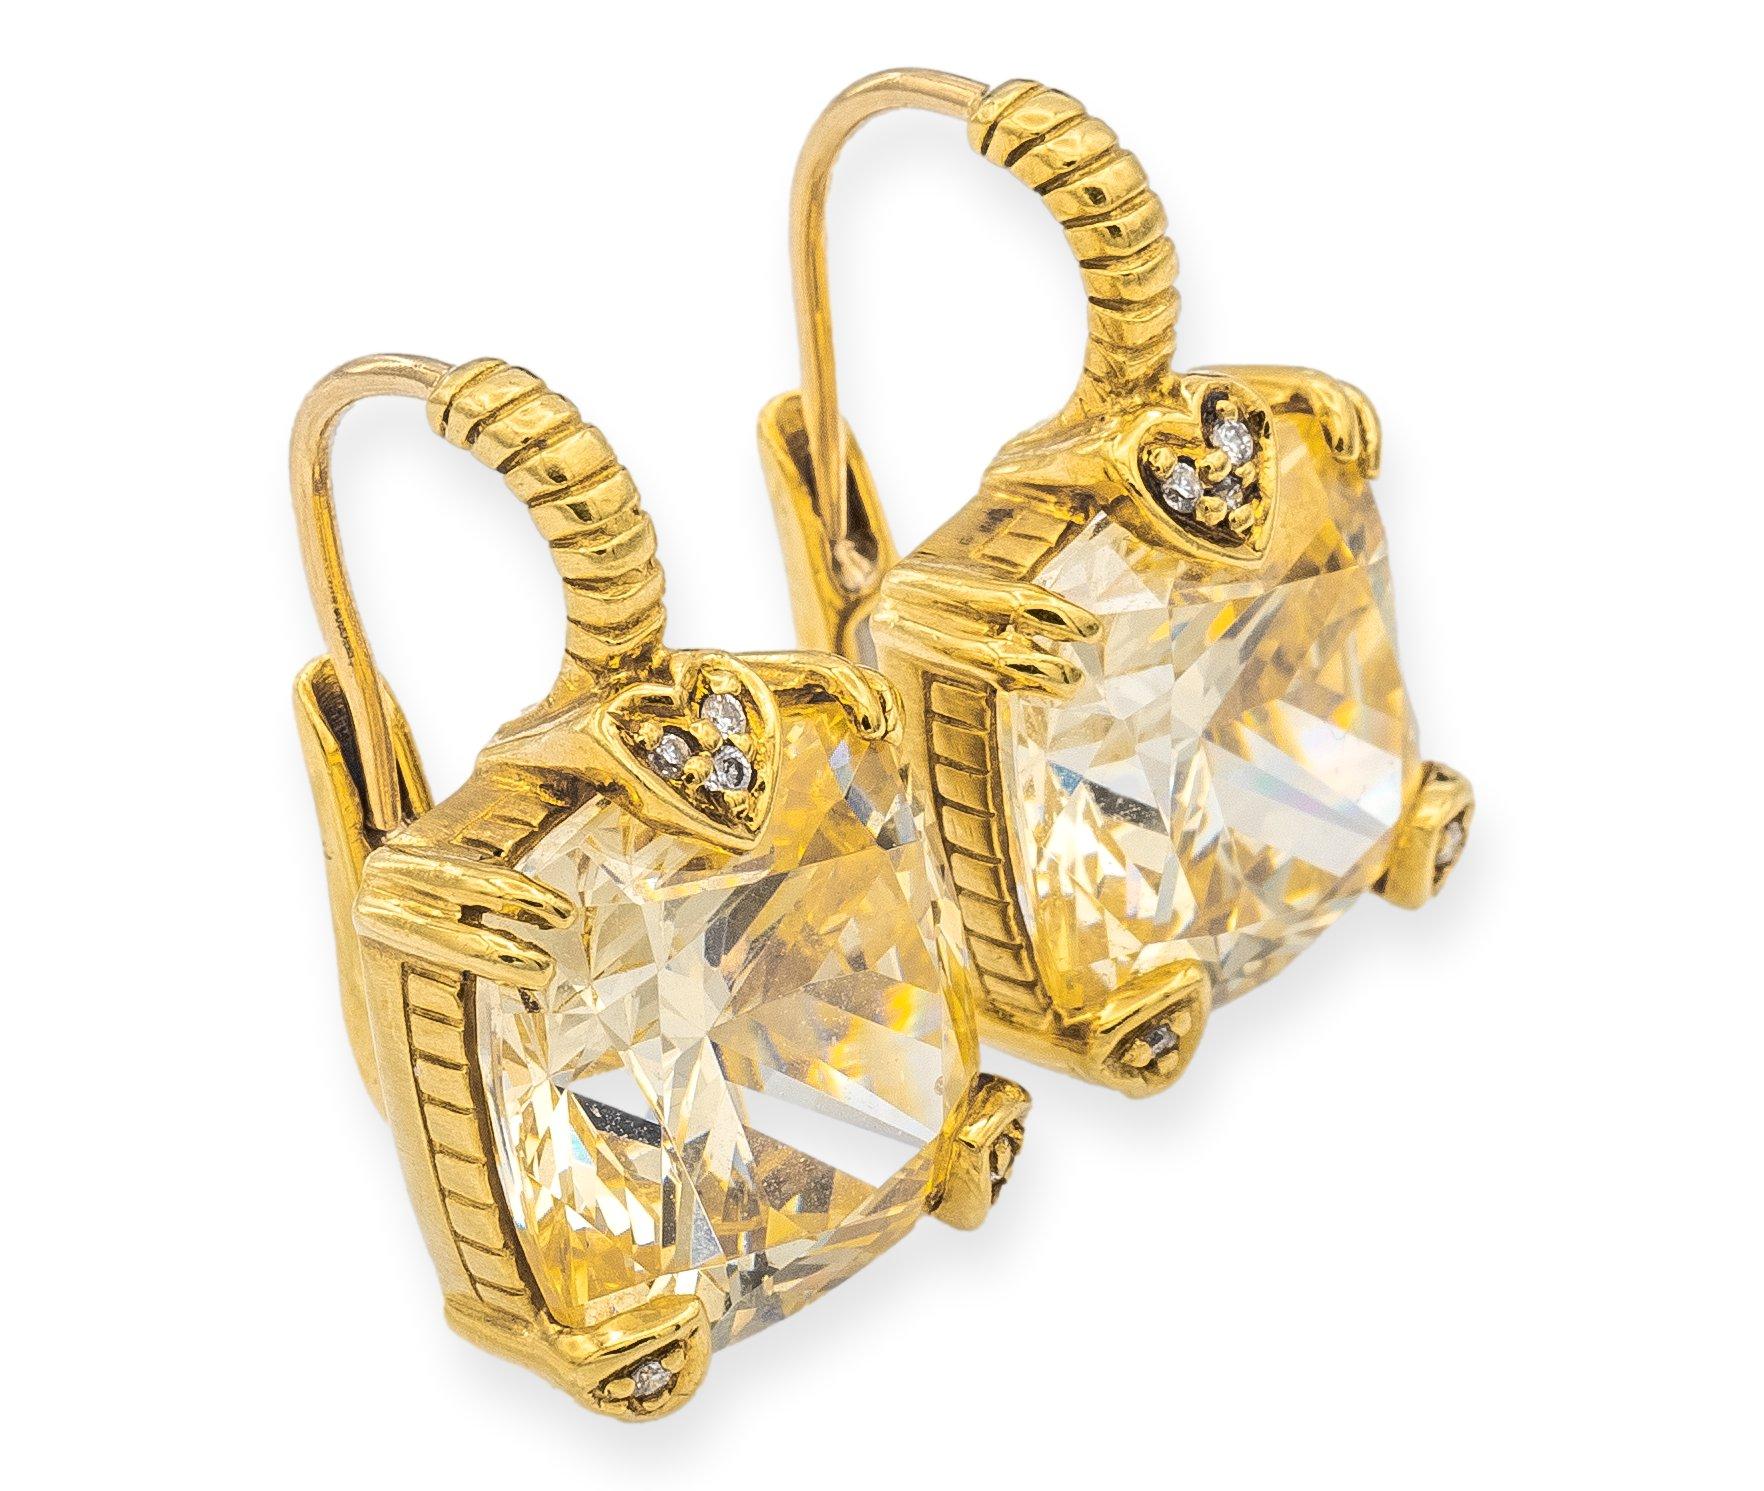 Die Judith Ripka Vintage Lever-Back-Ohrringe sind eine klassische und elegante Wahl. Die Ohrringe sind fein aus 18 Karat Gelbgold gefertigt. Die Ohrringe sind mit 2 atemberaubenden kissenförmigen Zitronenquarz-Edelsteinen geschmückt, die ein warmes,